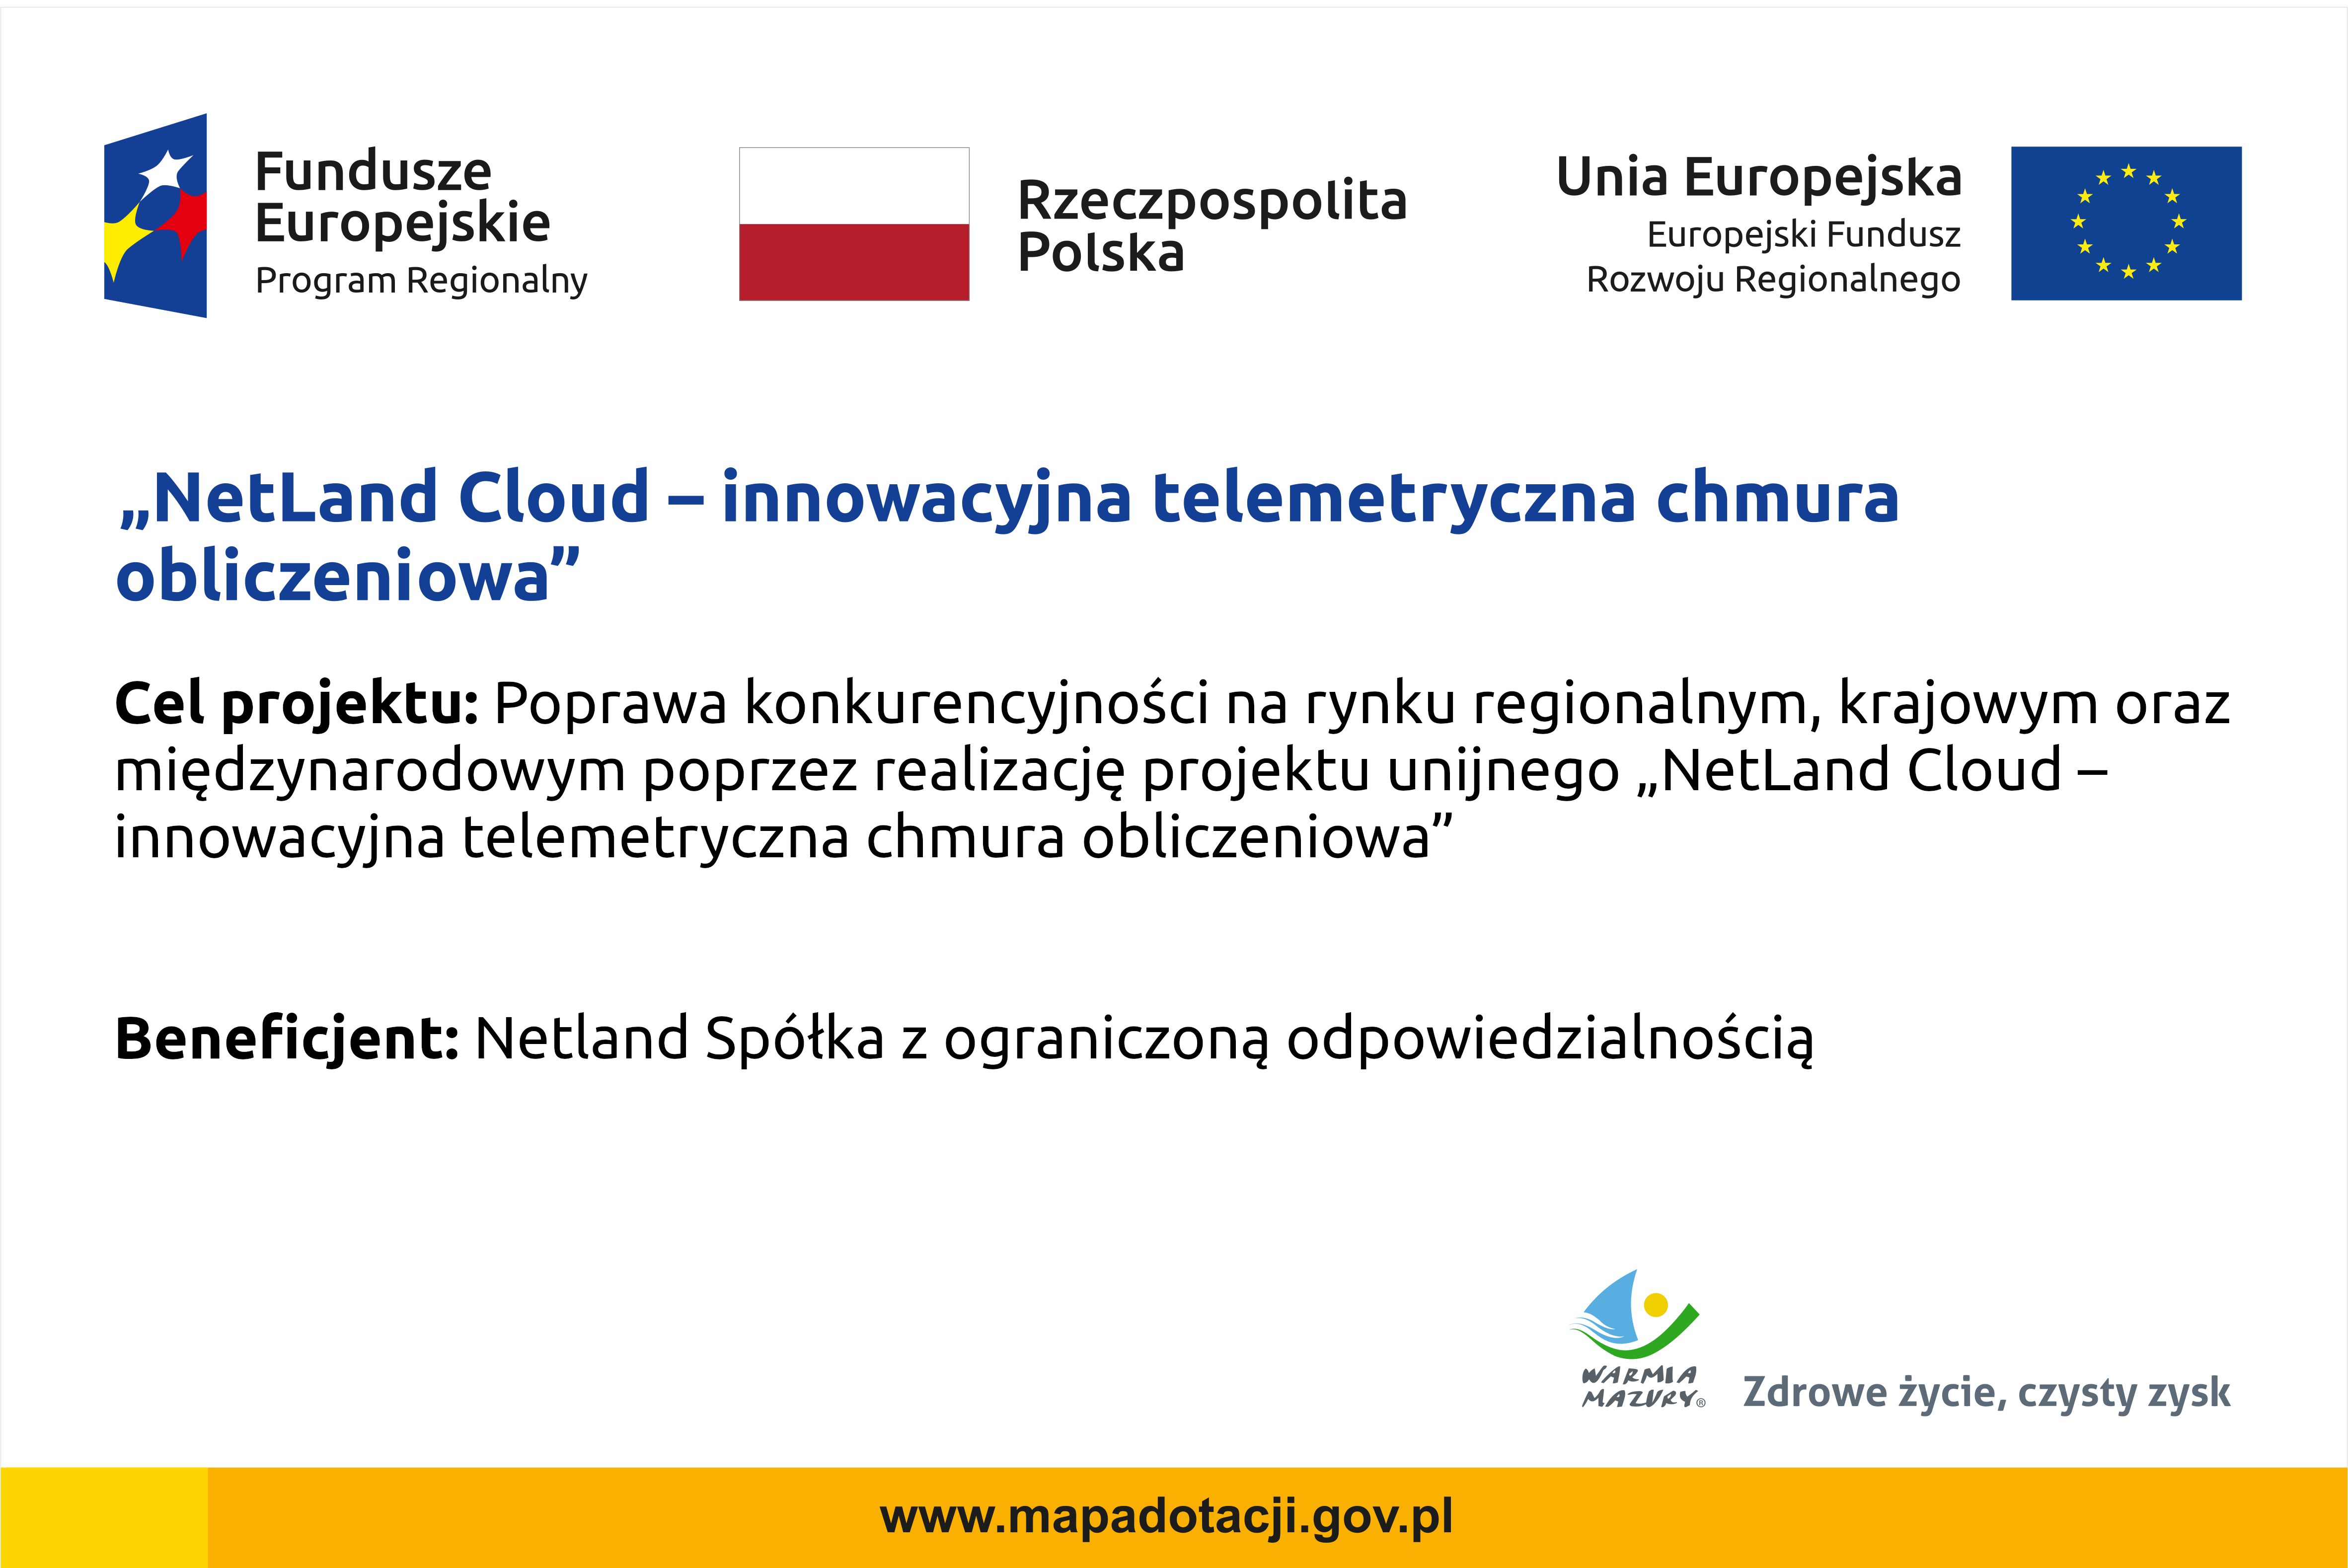 NetLand Cloud - innowacyjna chmura obliczeniowa